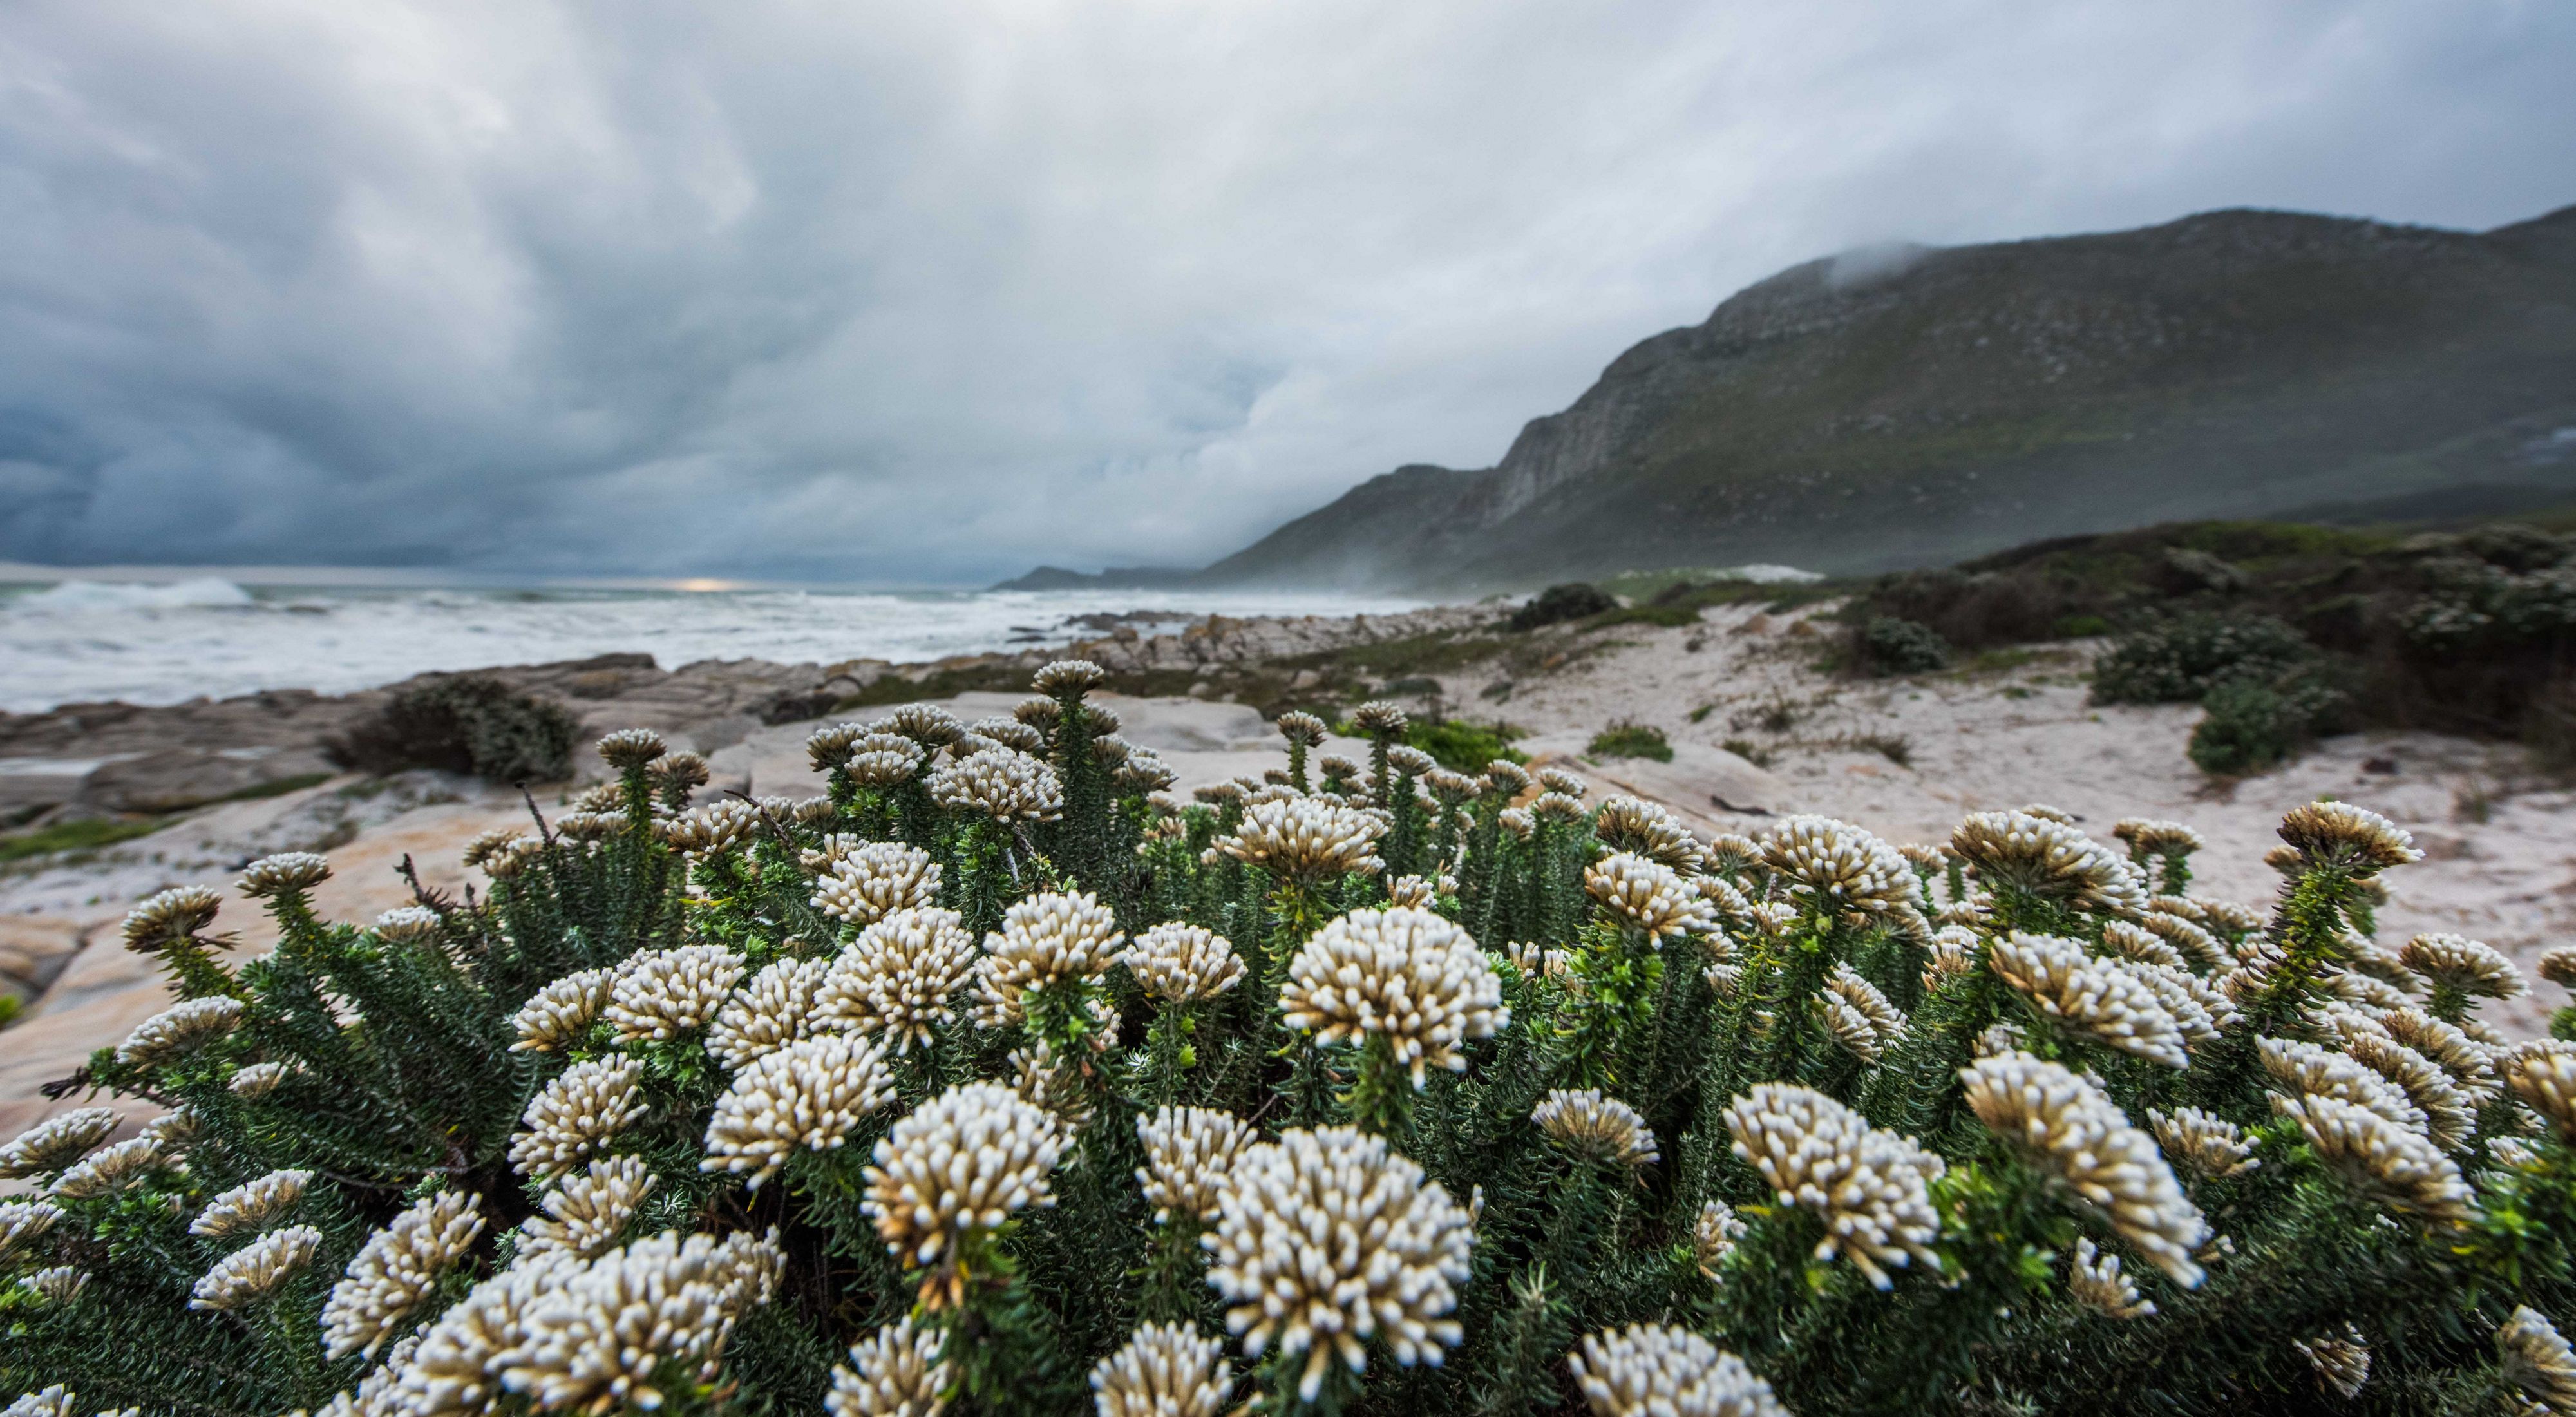 fynbos flowers on the beach